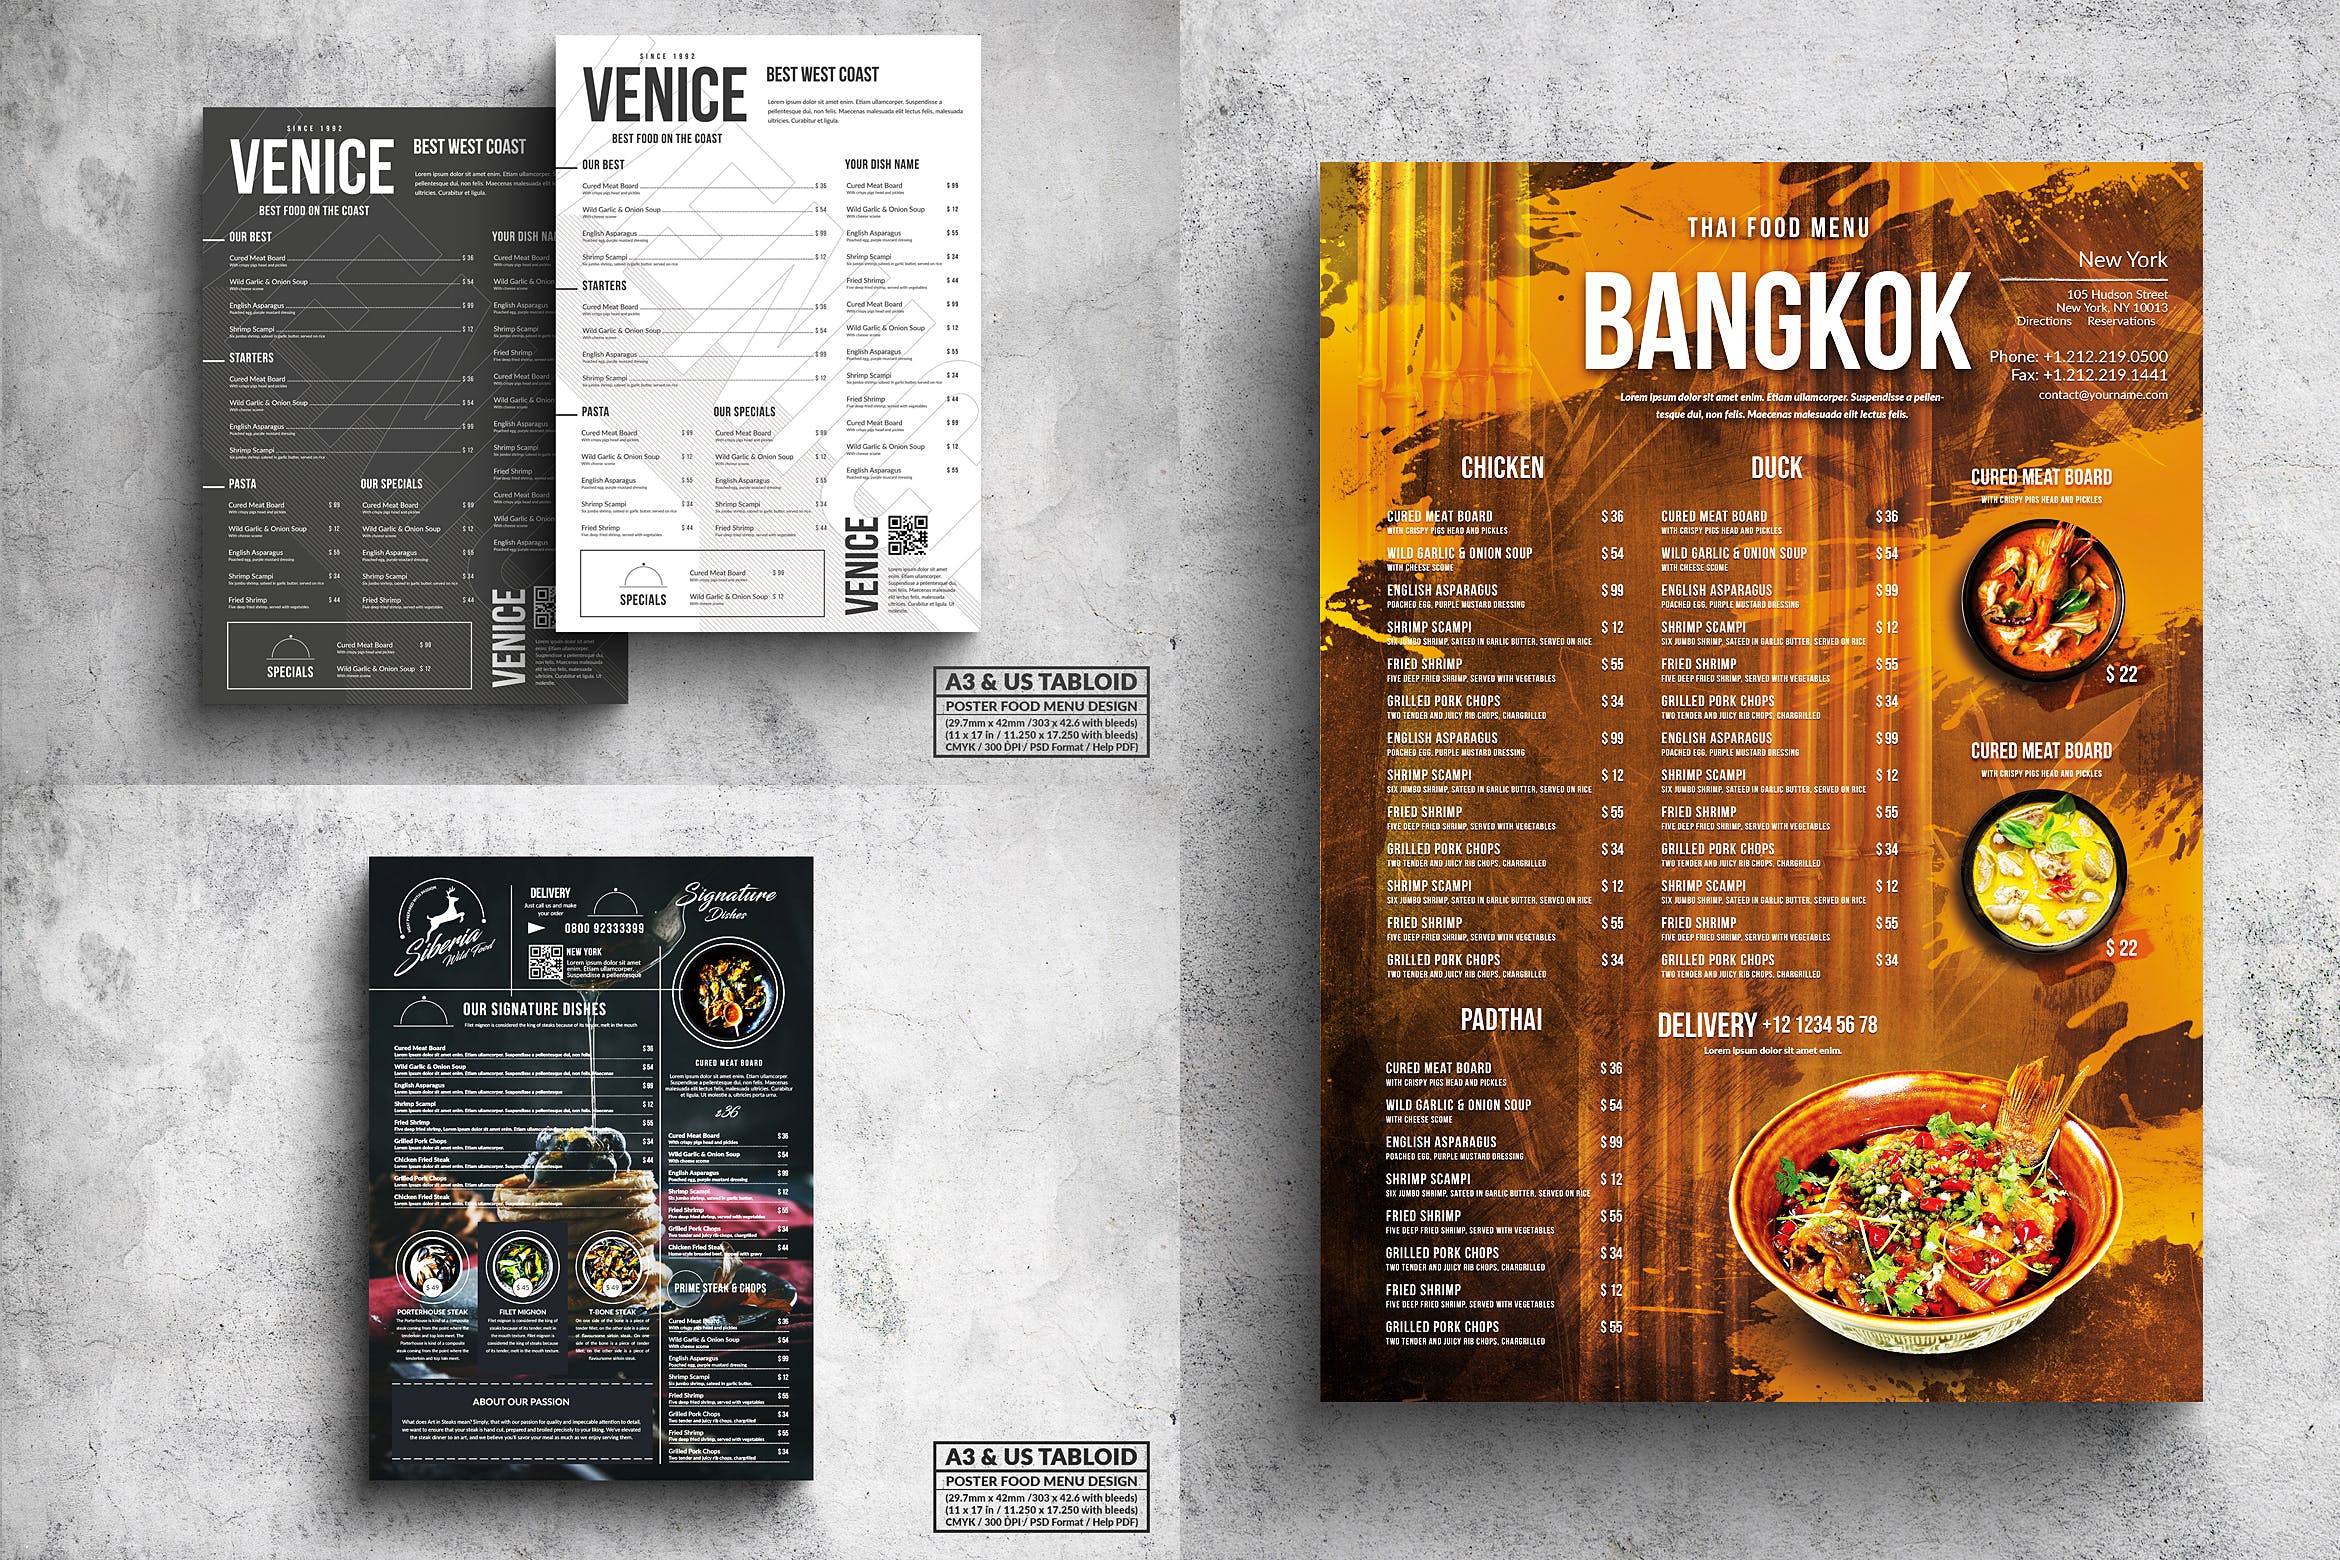 多合一餐馆餐厅菜单海报PSD素材素材库精选模板v2 Poster Food Menu A3 & US Tabloid Bundle插图